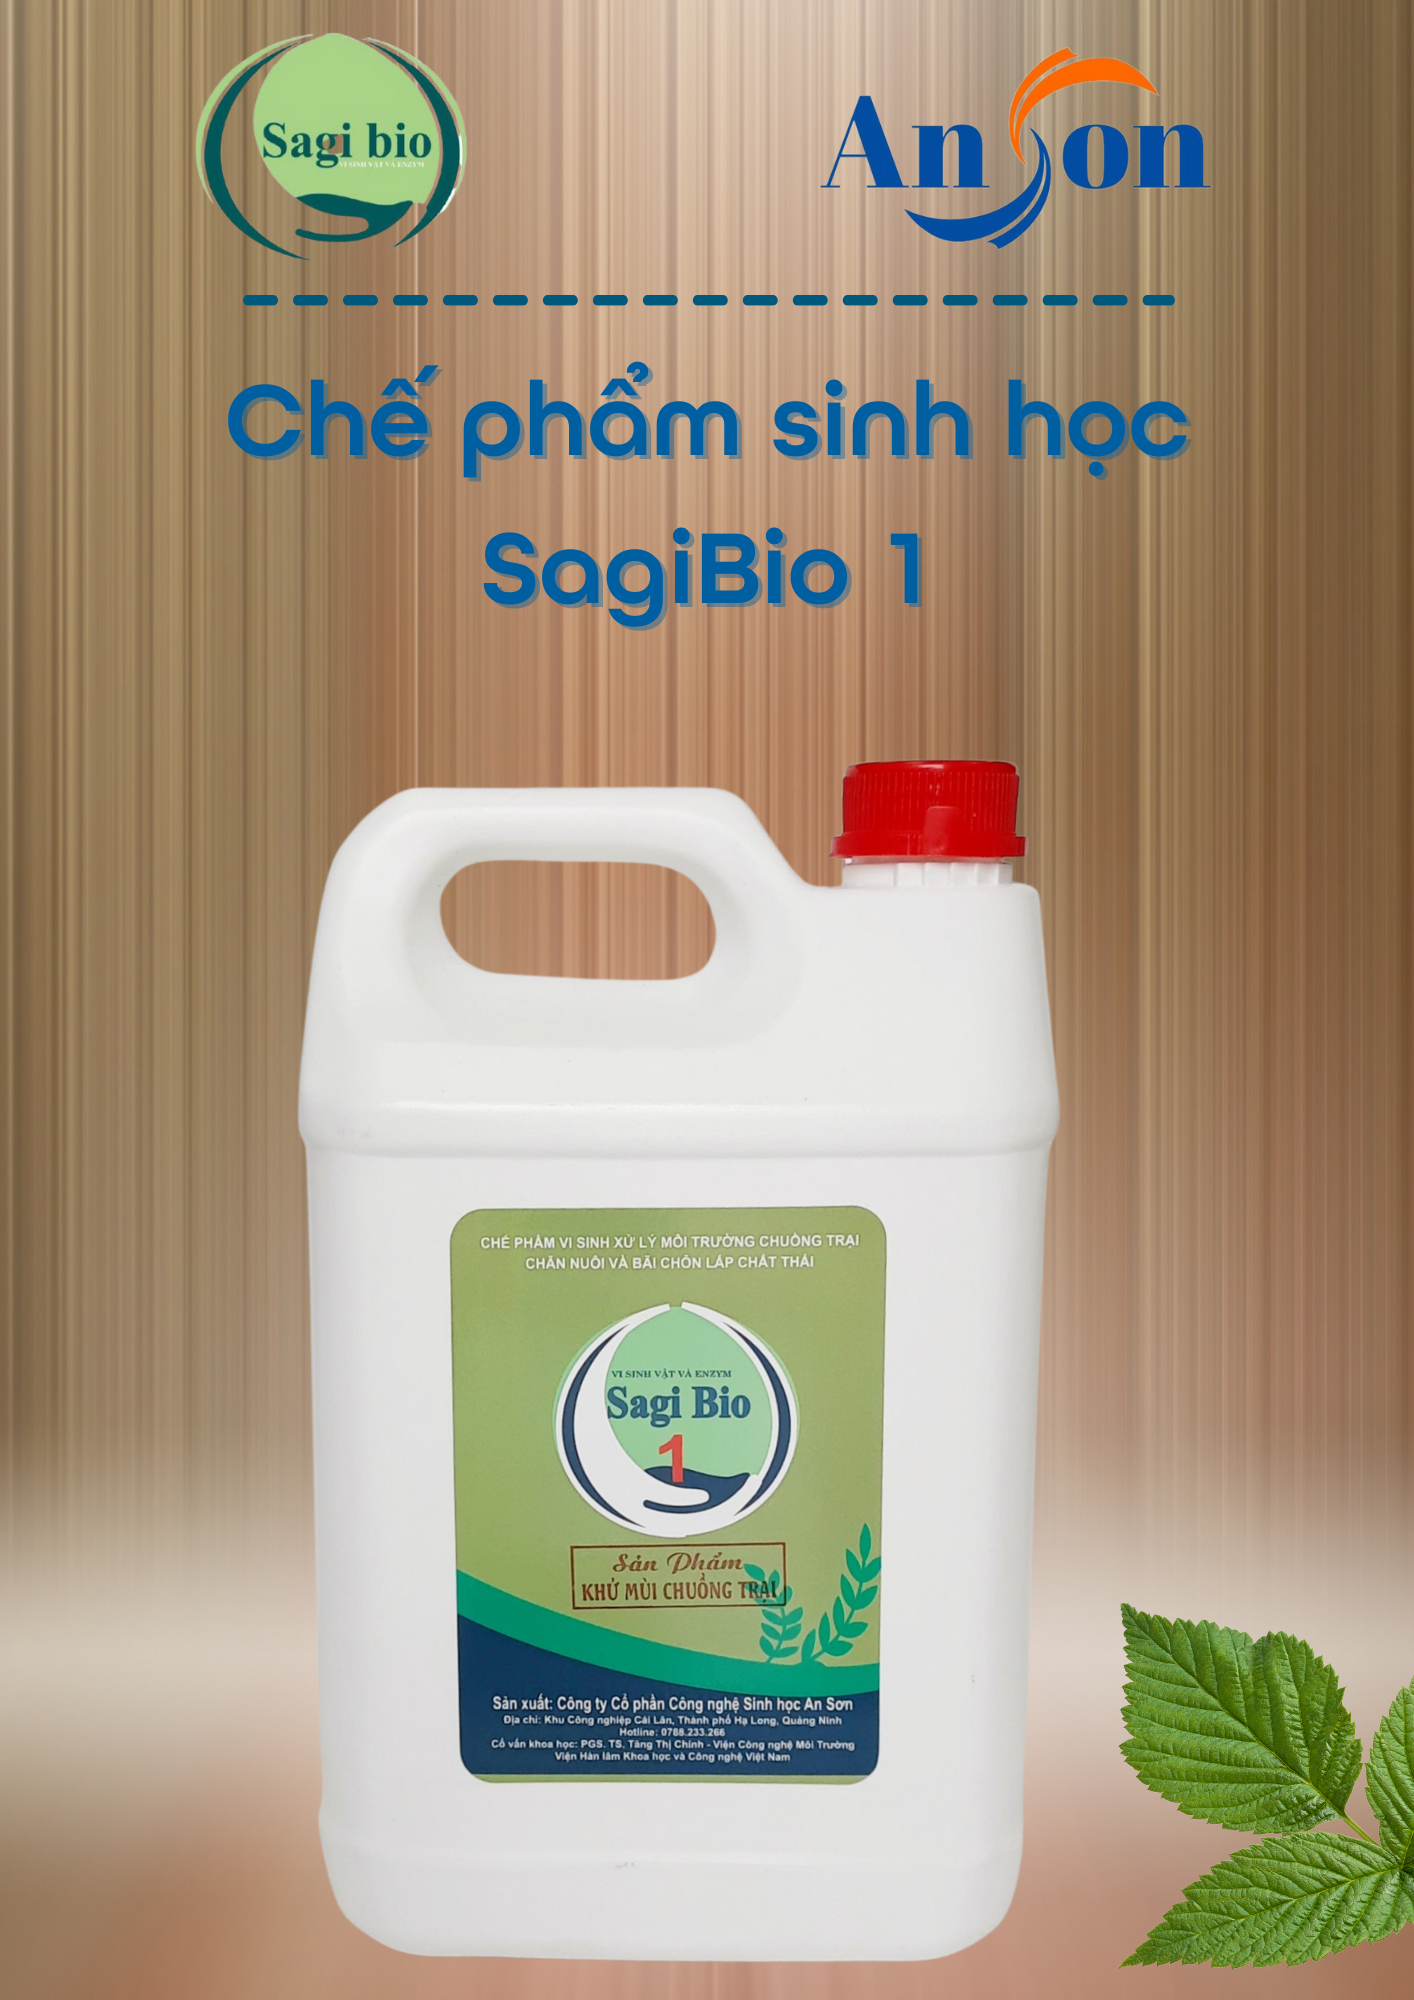 Chế phẩm sinh học khử mùi chuồng trại chăn nuôi Sagi Bio 1